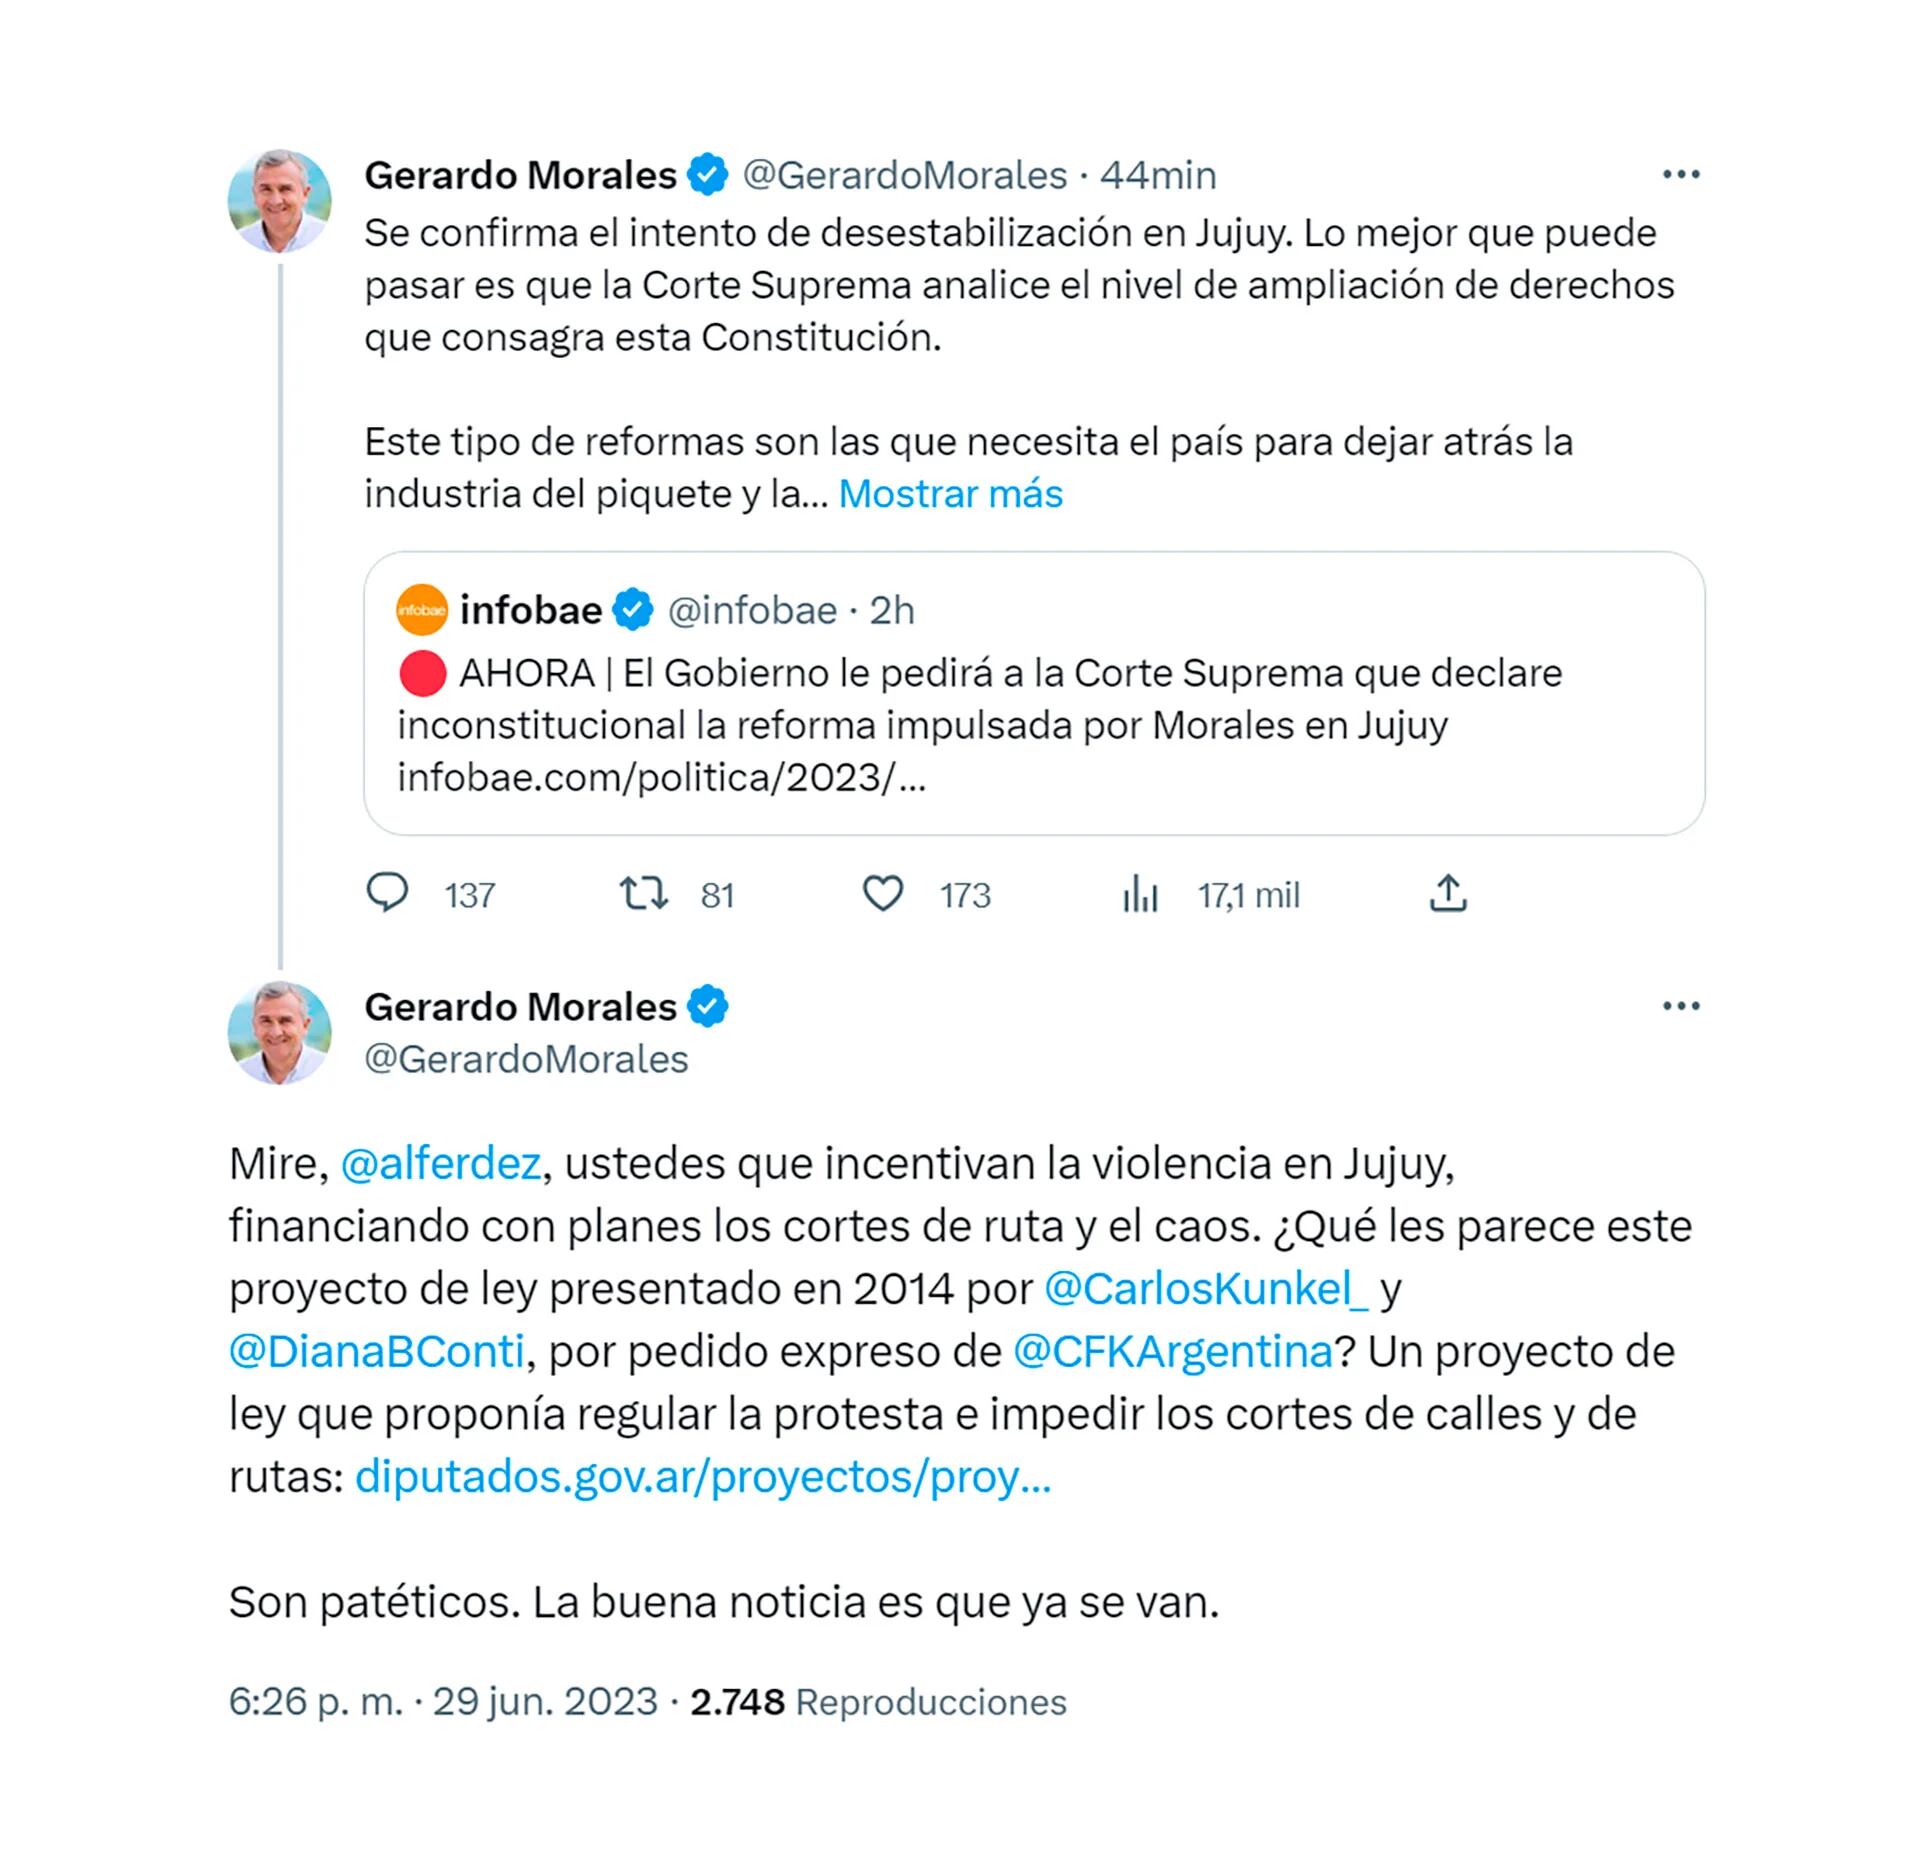 Gerardo Morales's response